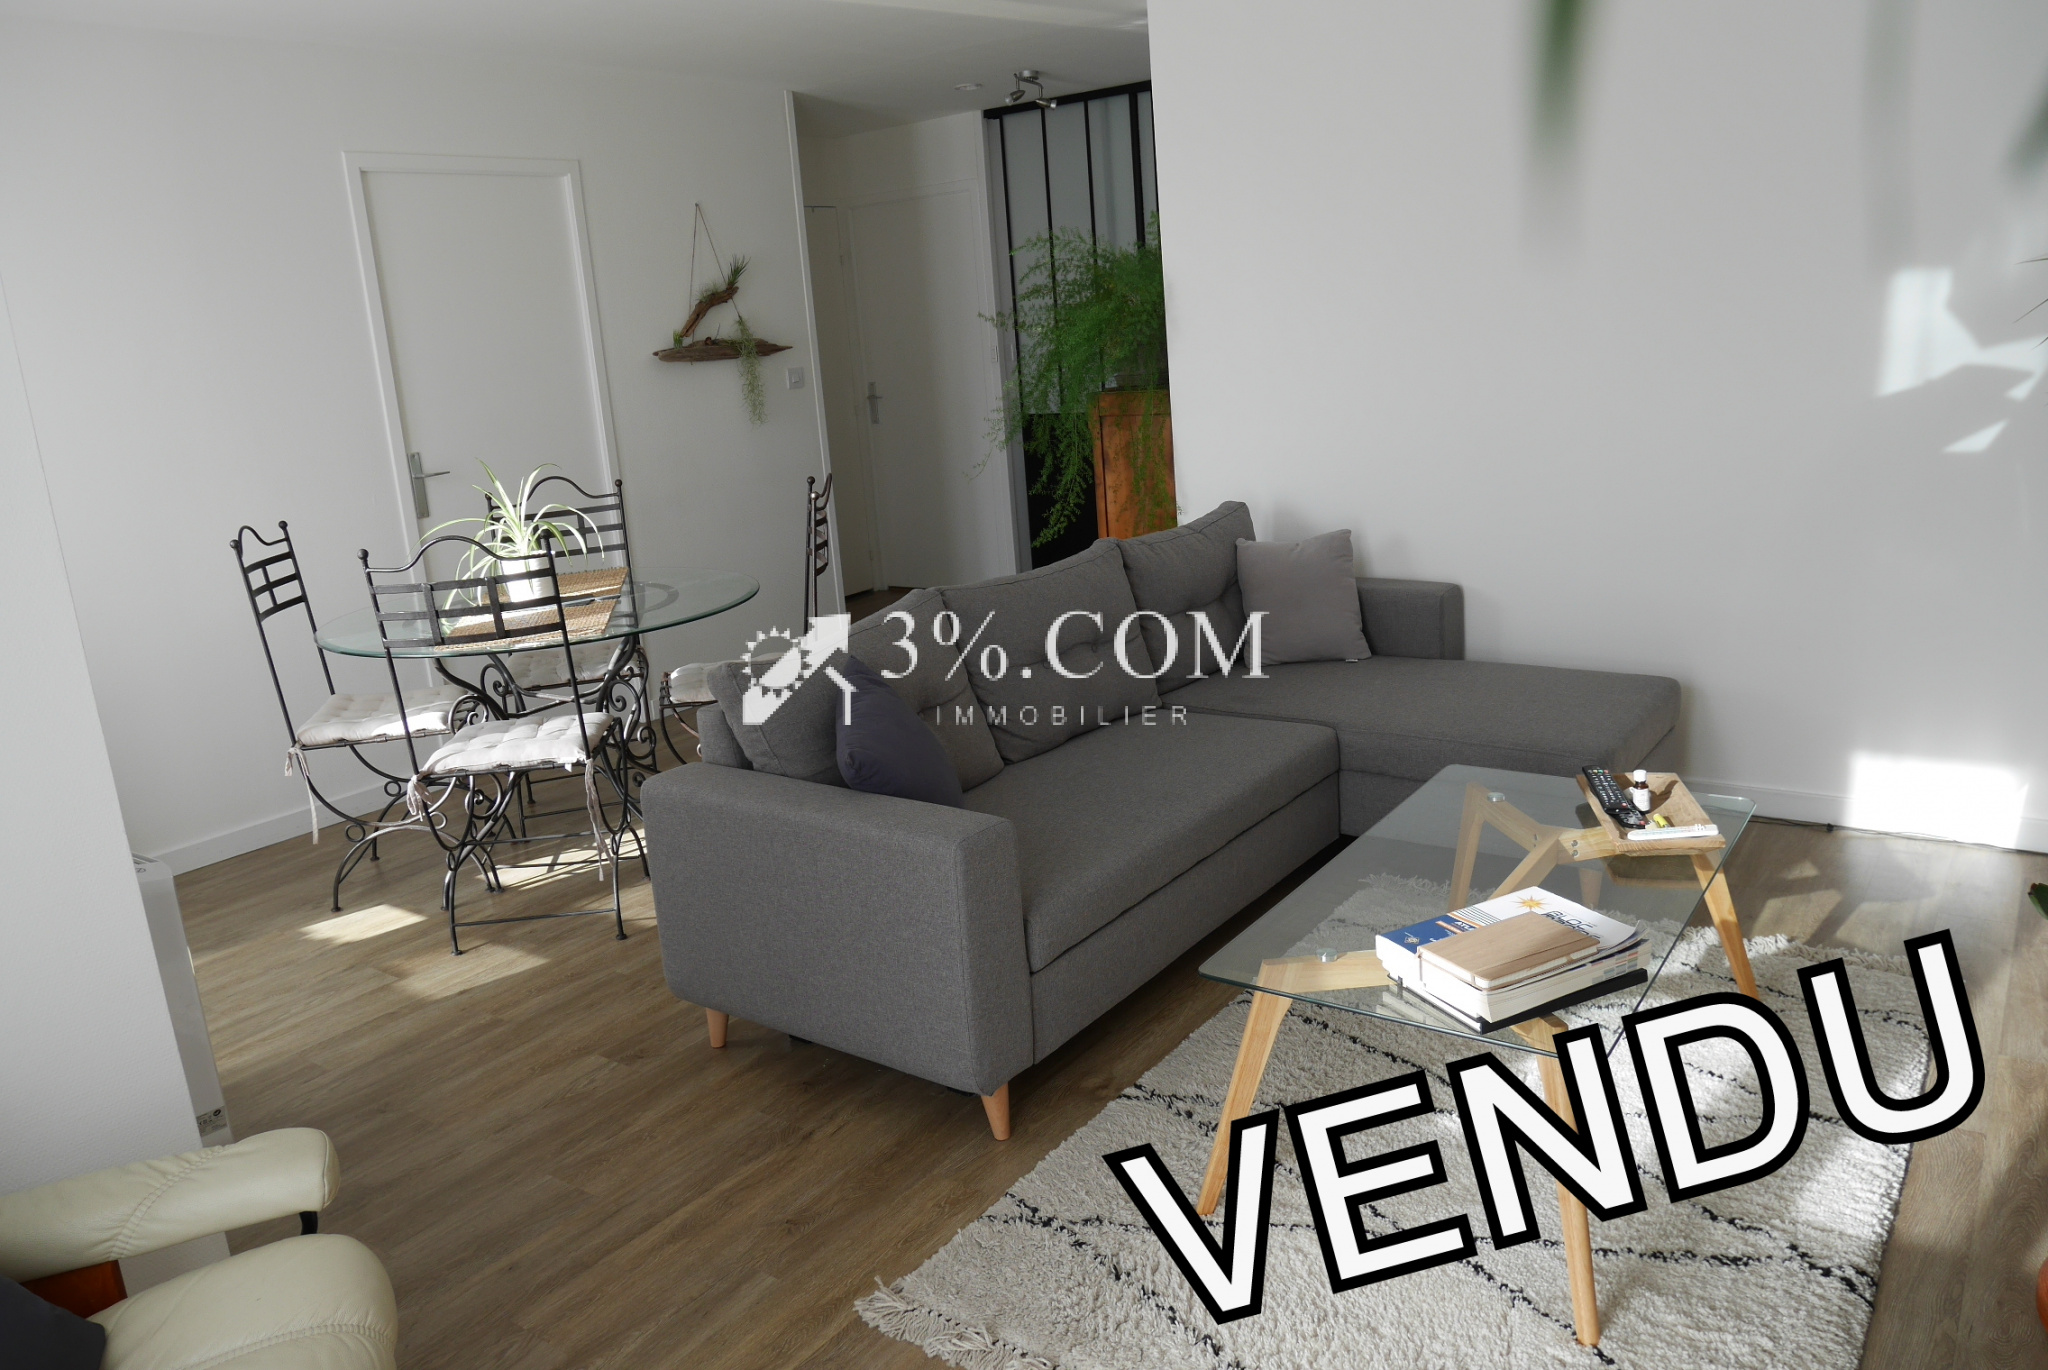 Vente Appartement 67m² 3 Pièces à Nantes (44000) - 3%.Com